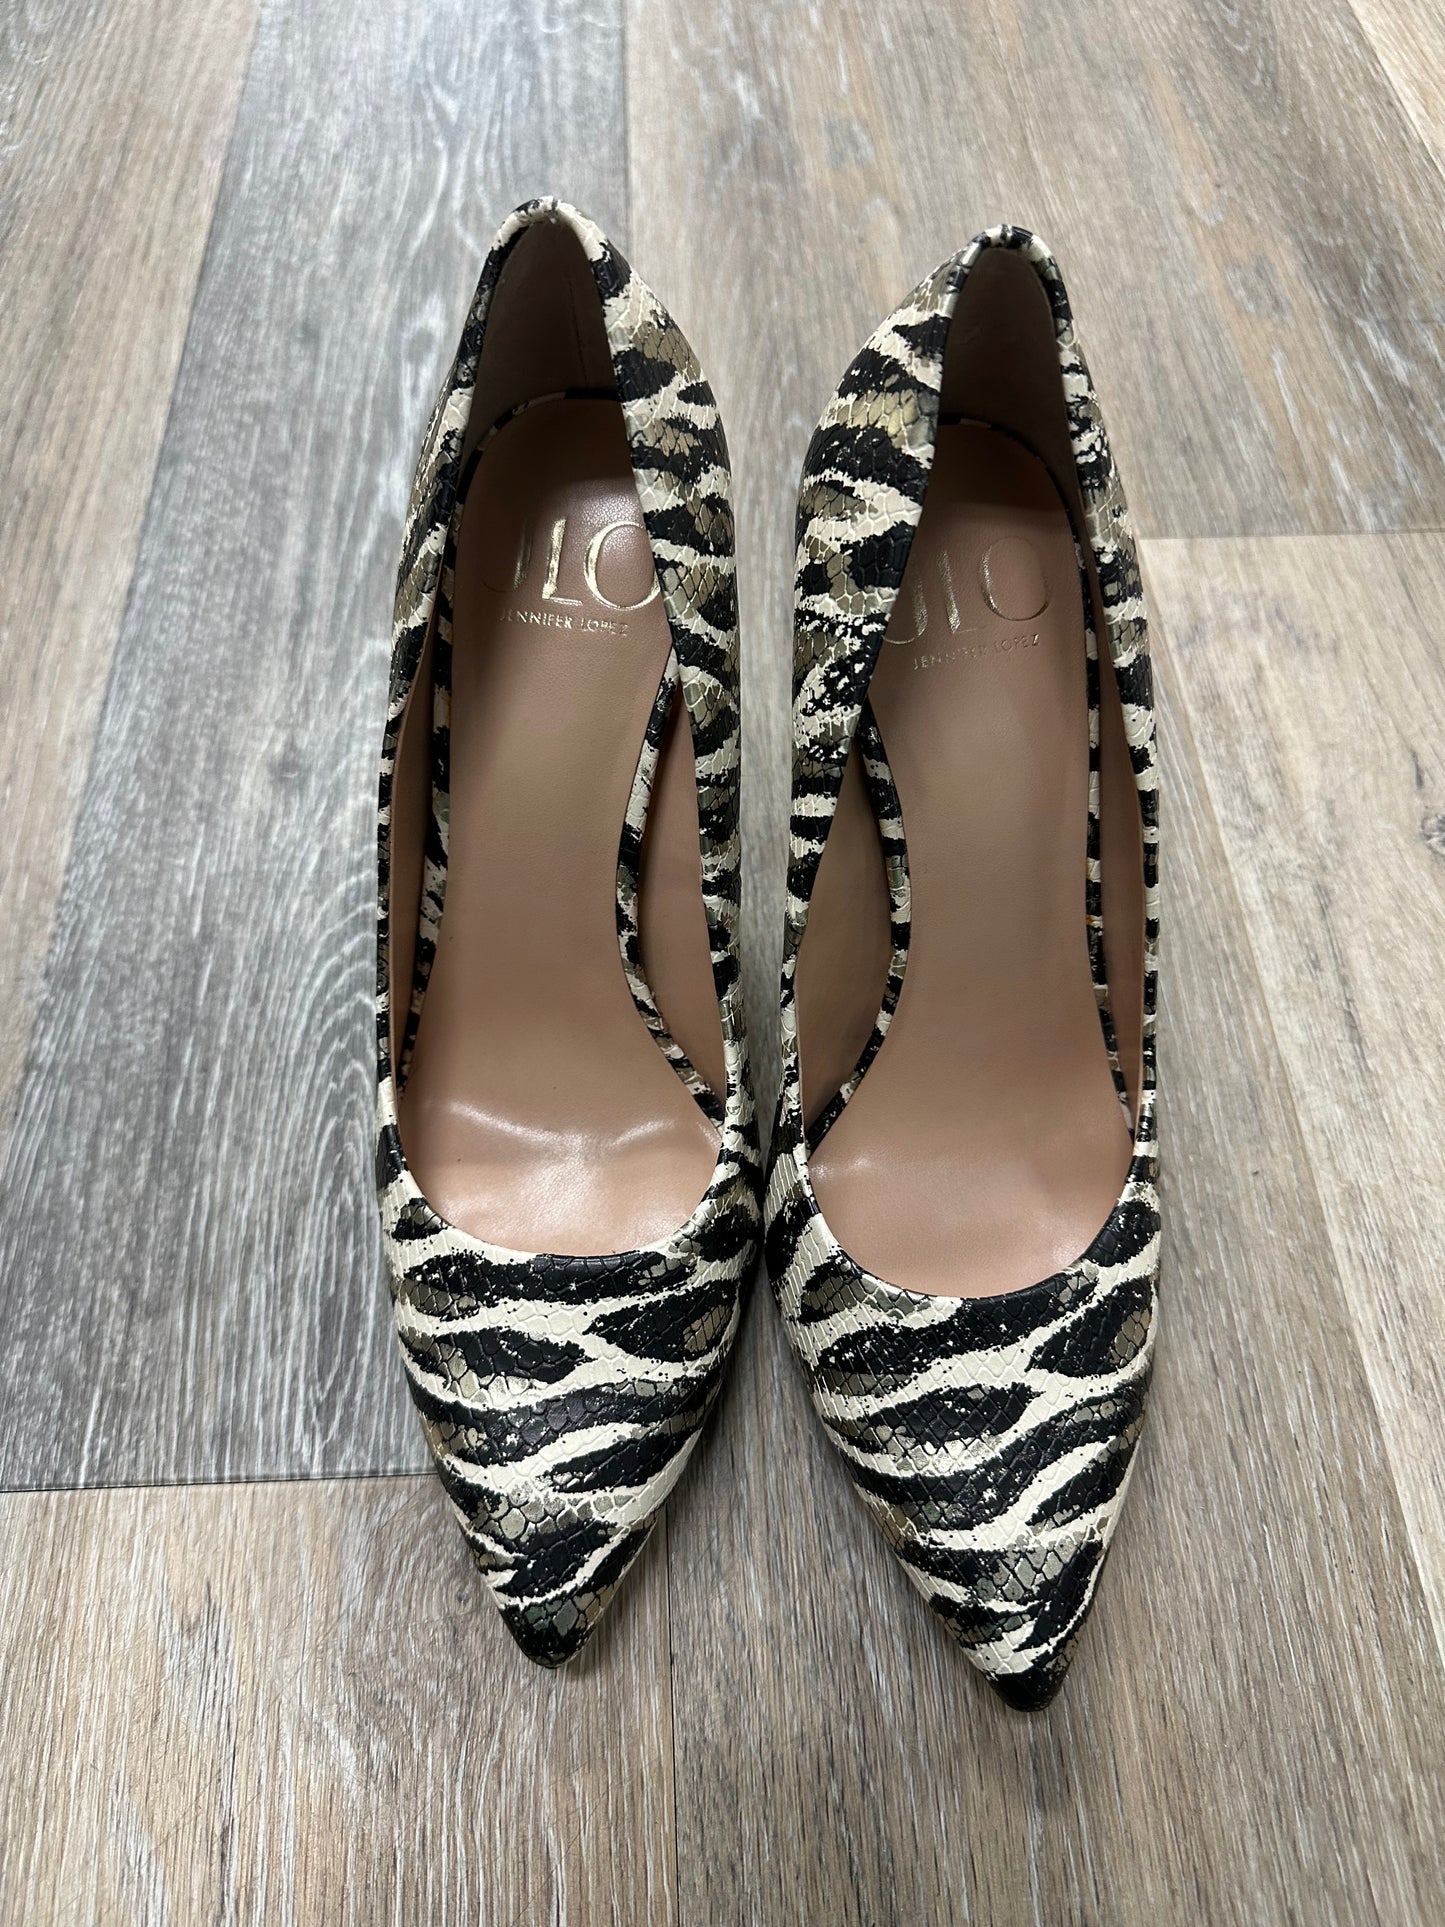 Shoes Heels Stiletto By Jennifer Lopez  Size: 8.5